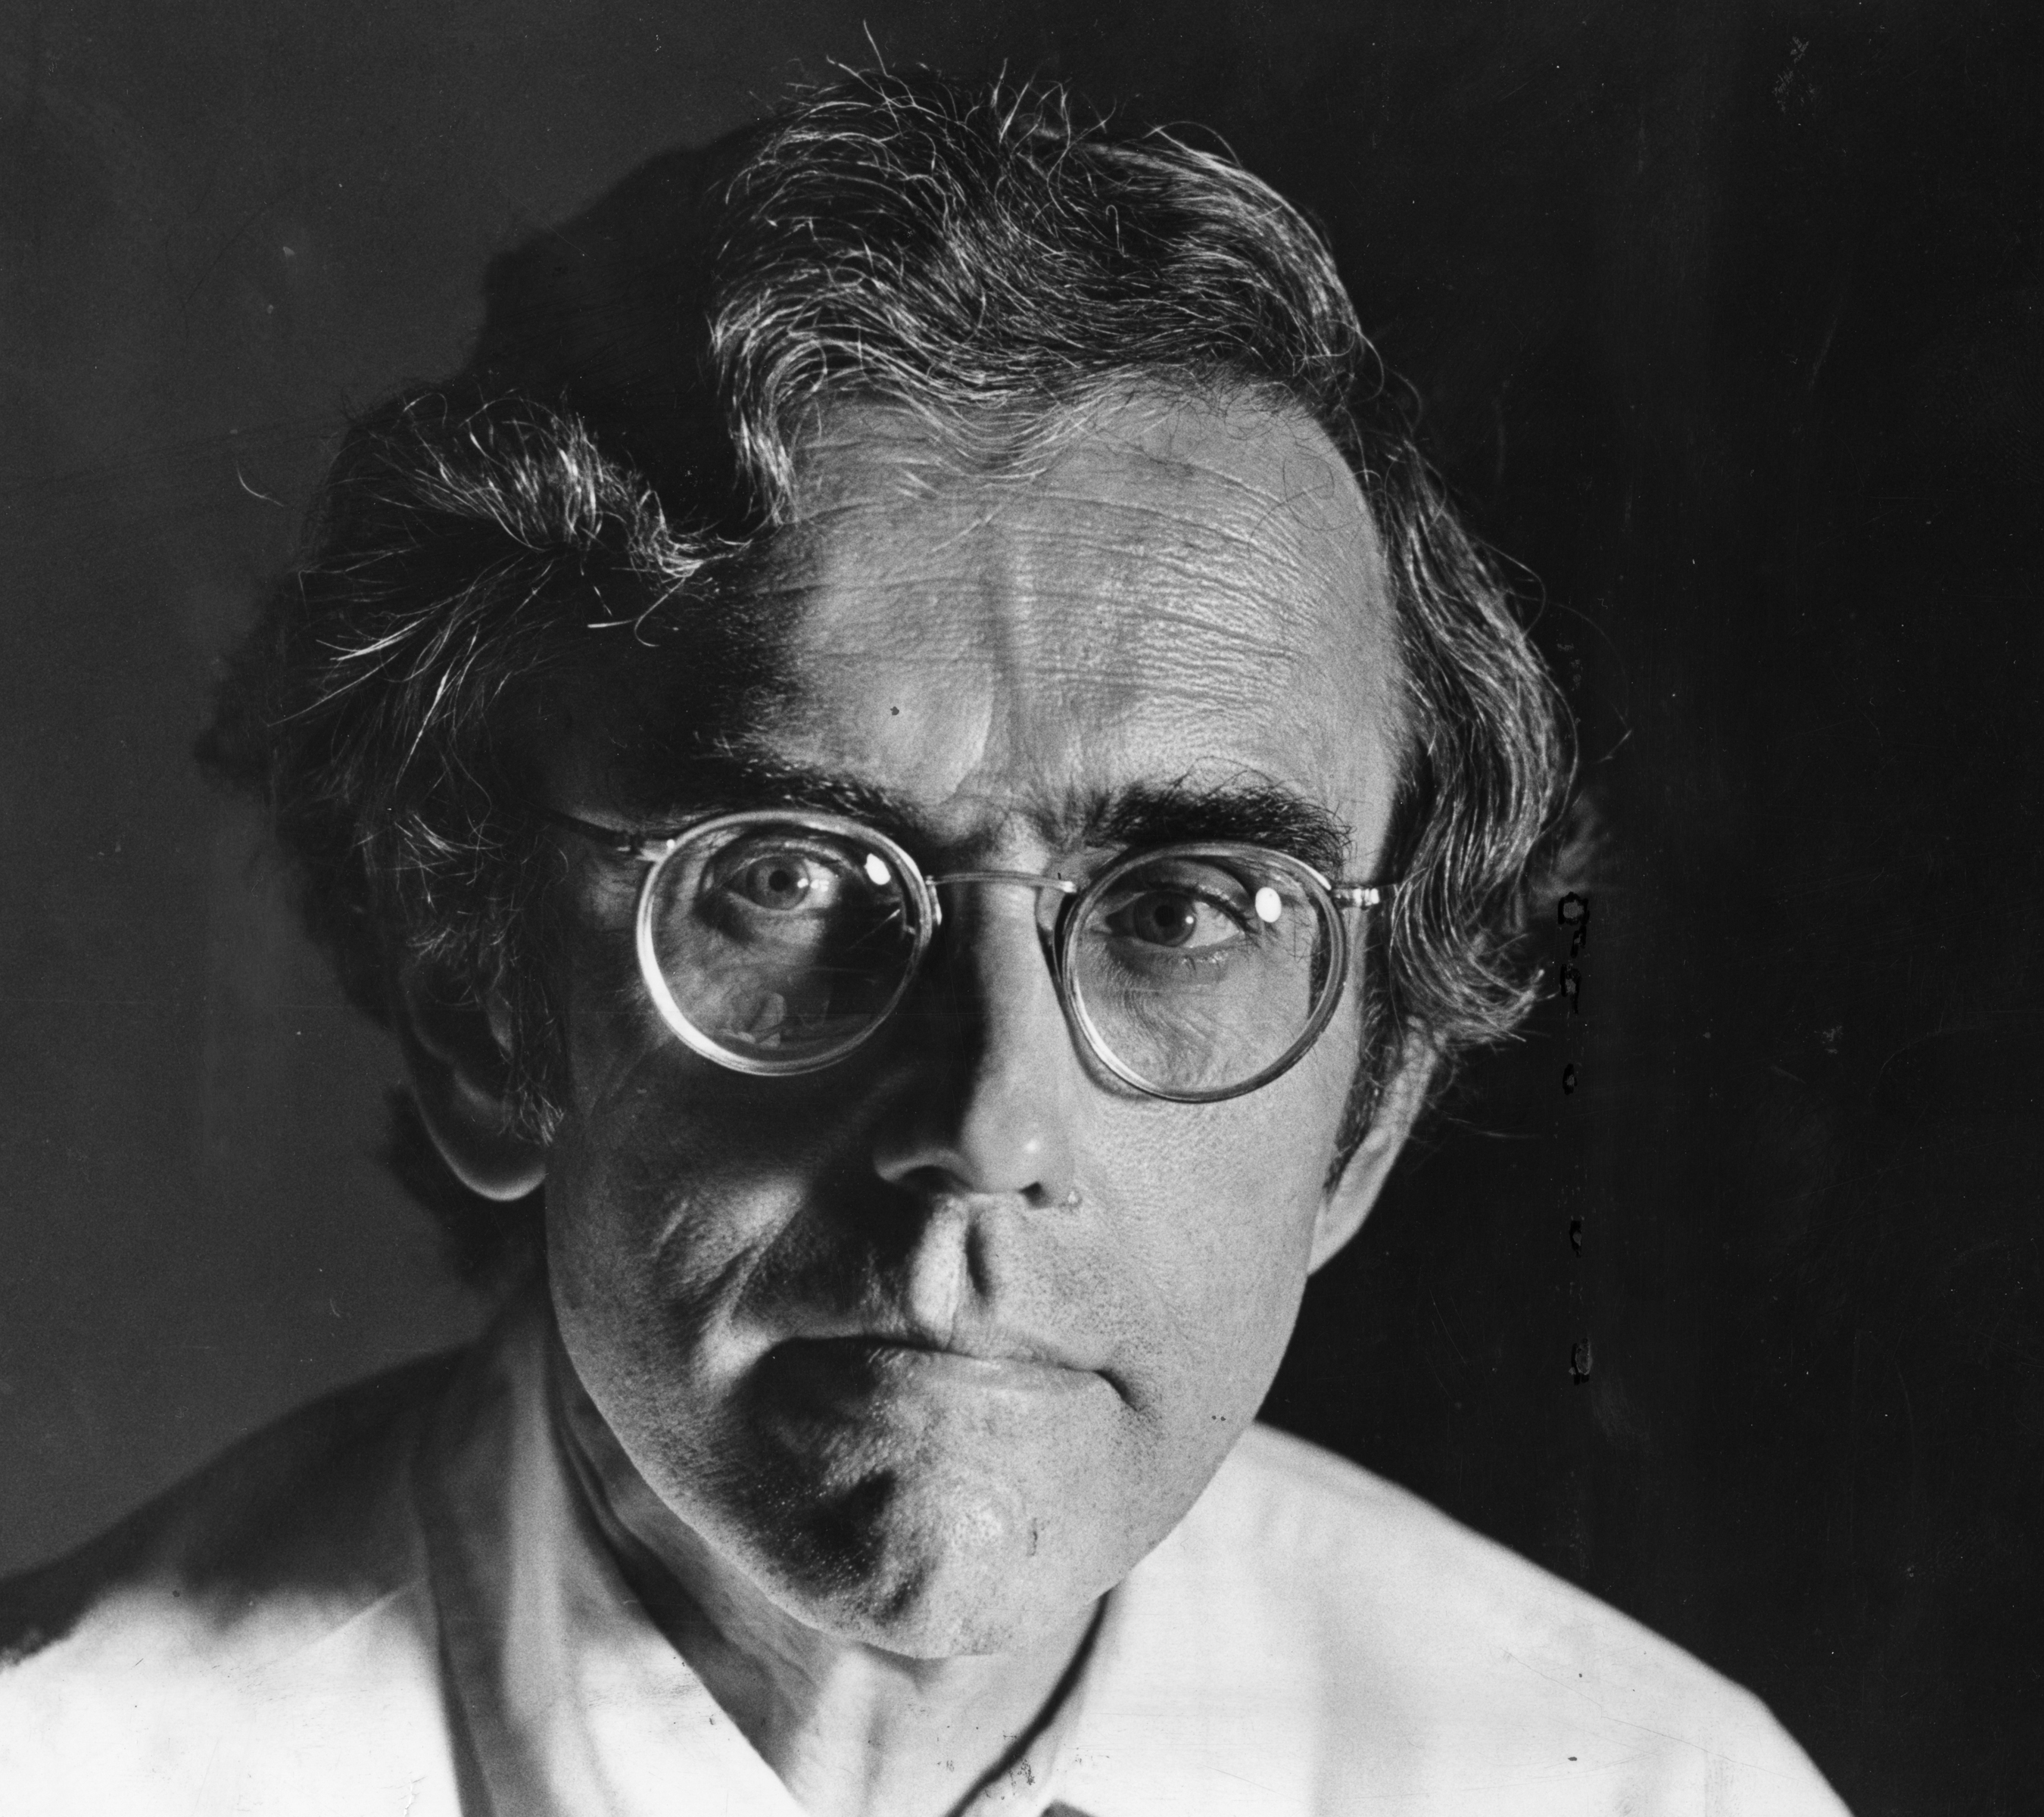 Peter Binzen in 1980
